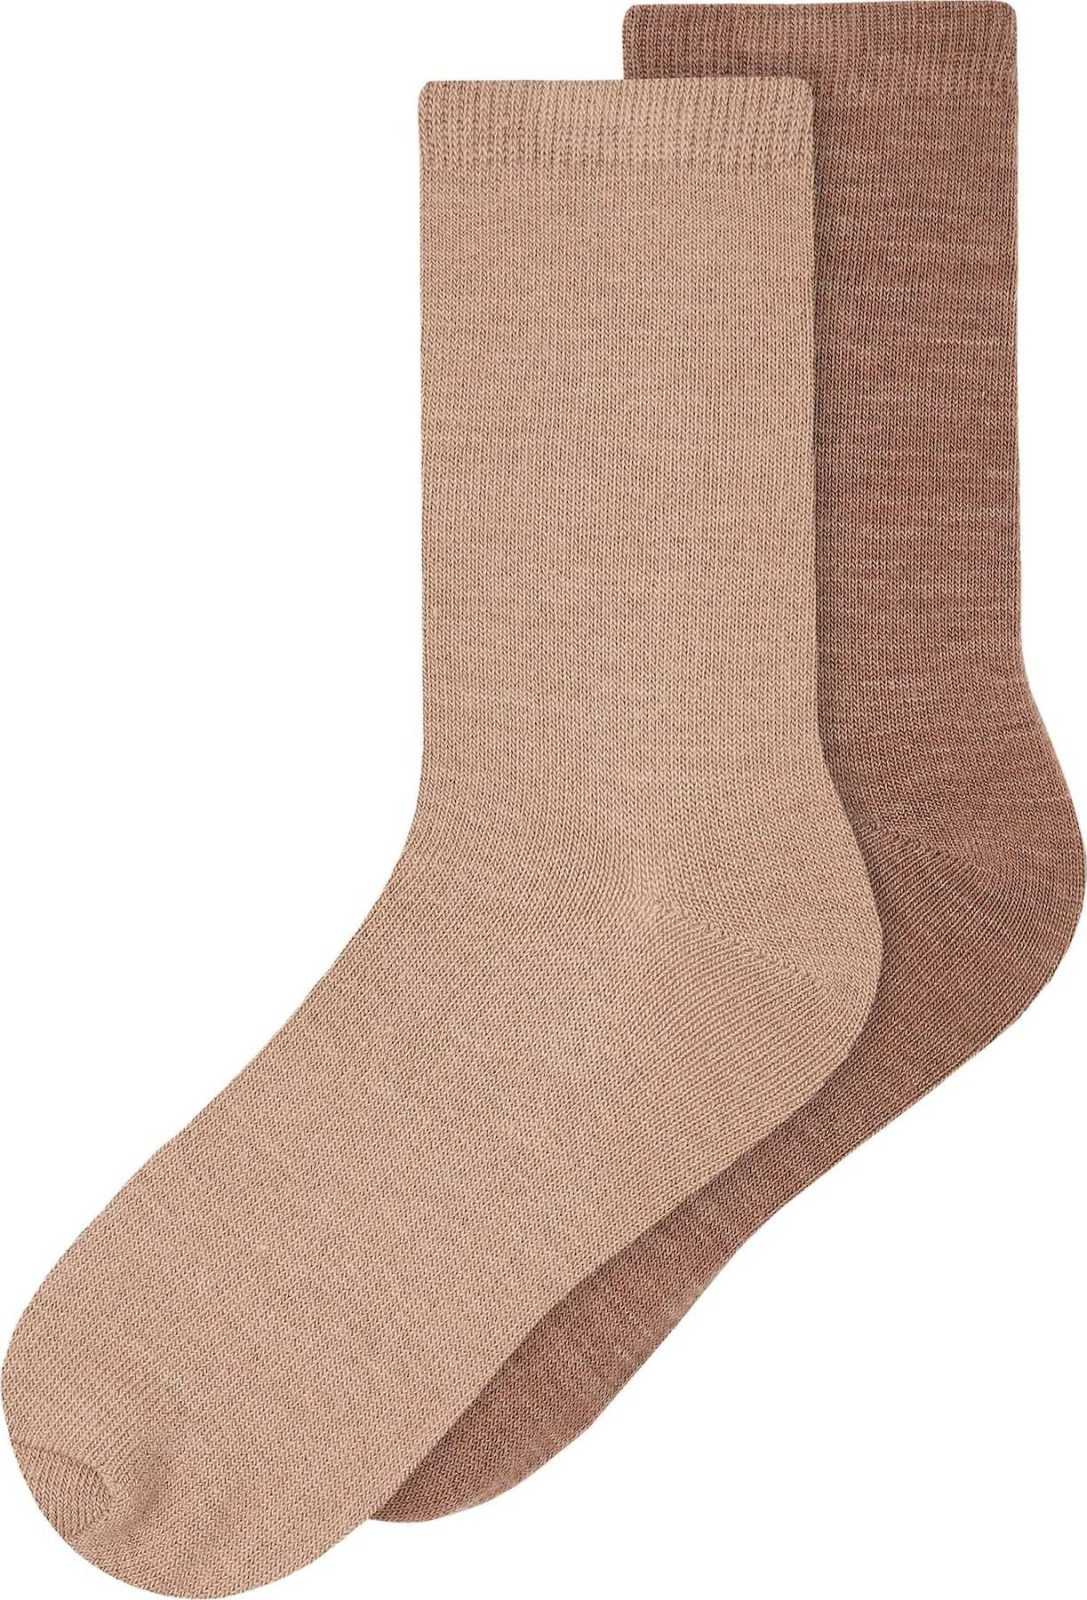 NAME IT Ponožky 'Wak' světle hnědá / hnědý melír